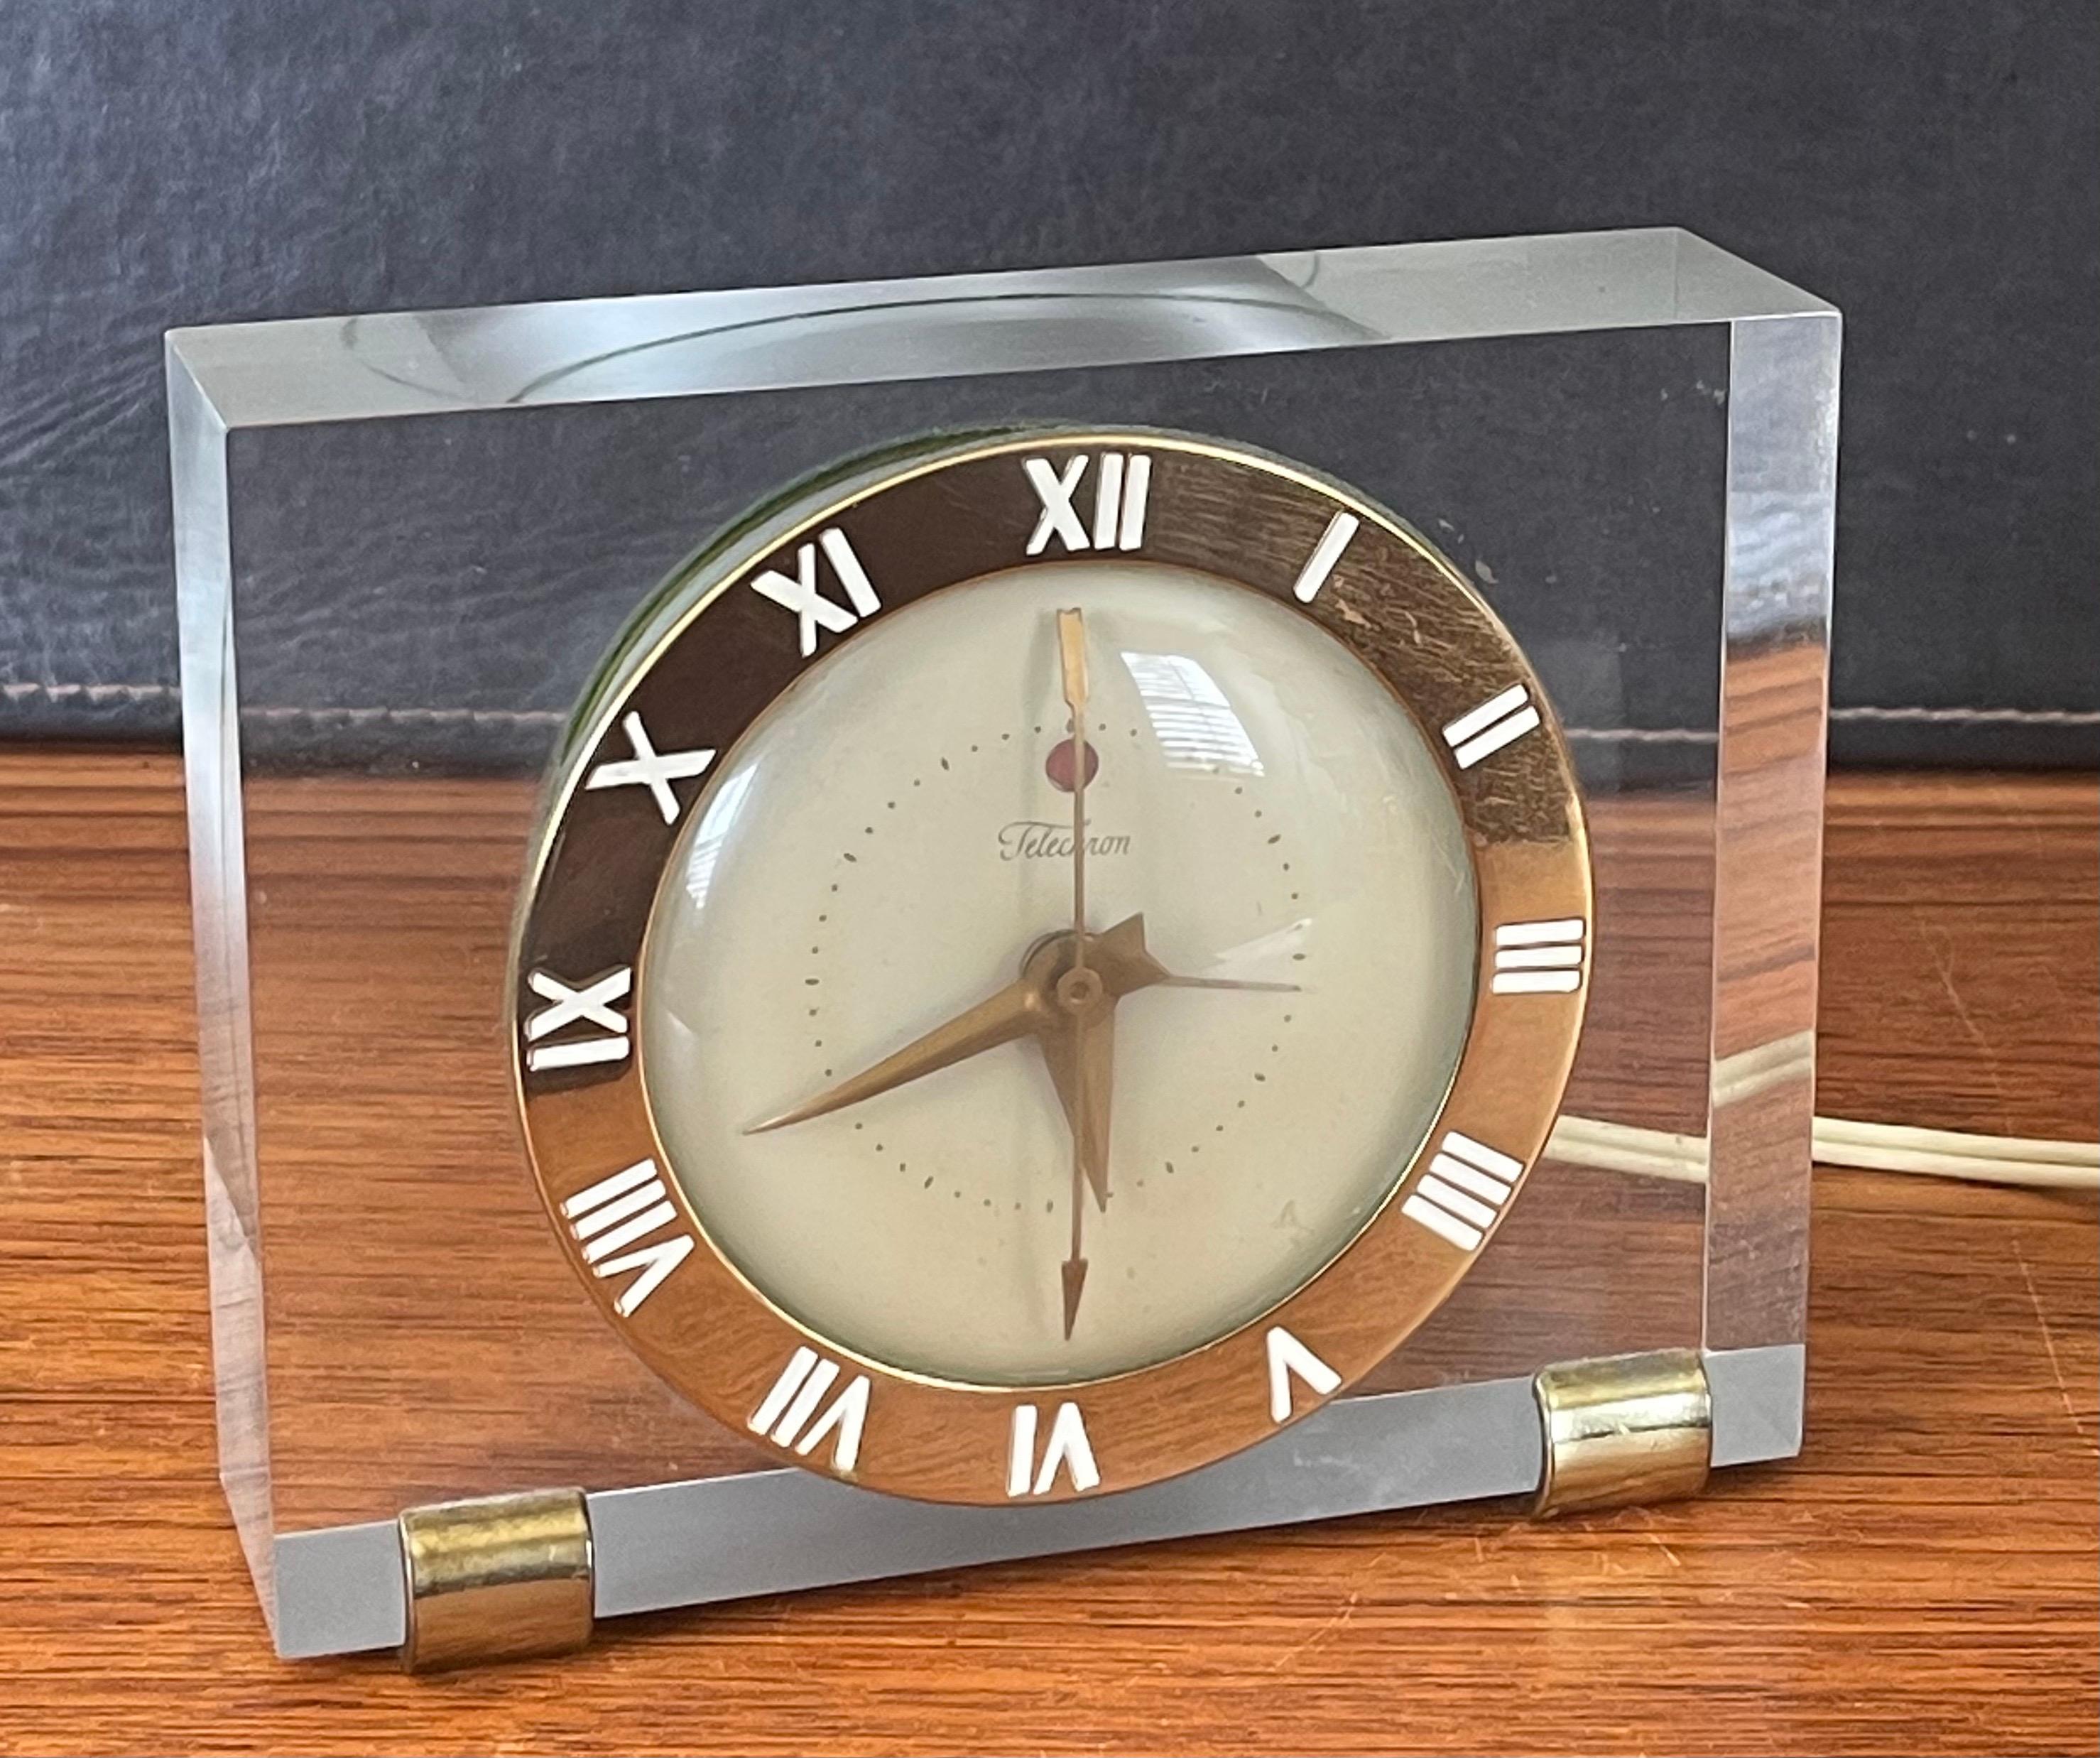 Une magnifique horloge électrique de bureau / de cheminée en lucite solide avec des accents en laiton par Telechron, vers les années 1940. L'horloge est en très bon état de fonctionnement et donne l'heure exacte. Le cadran en laiton présente des